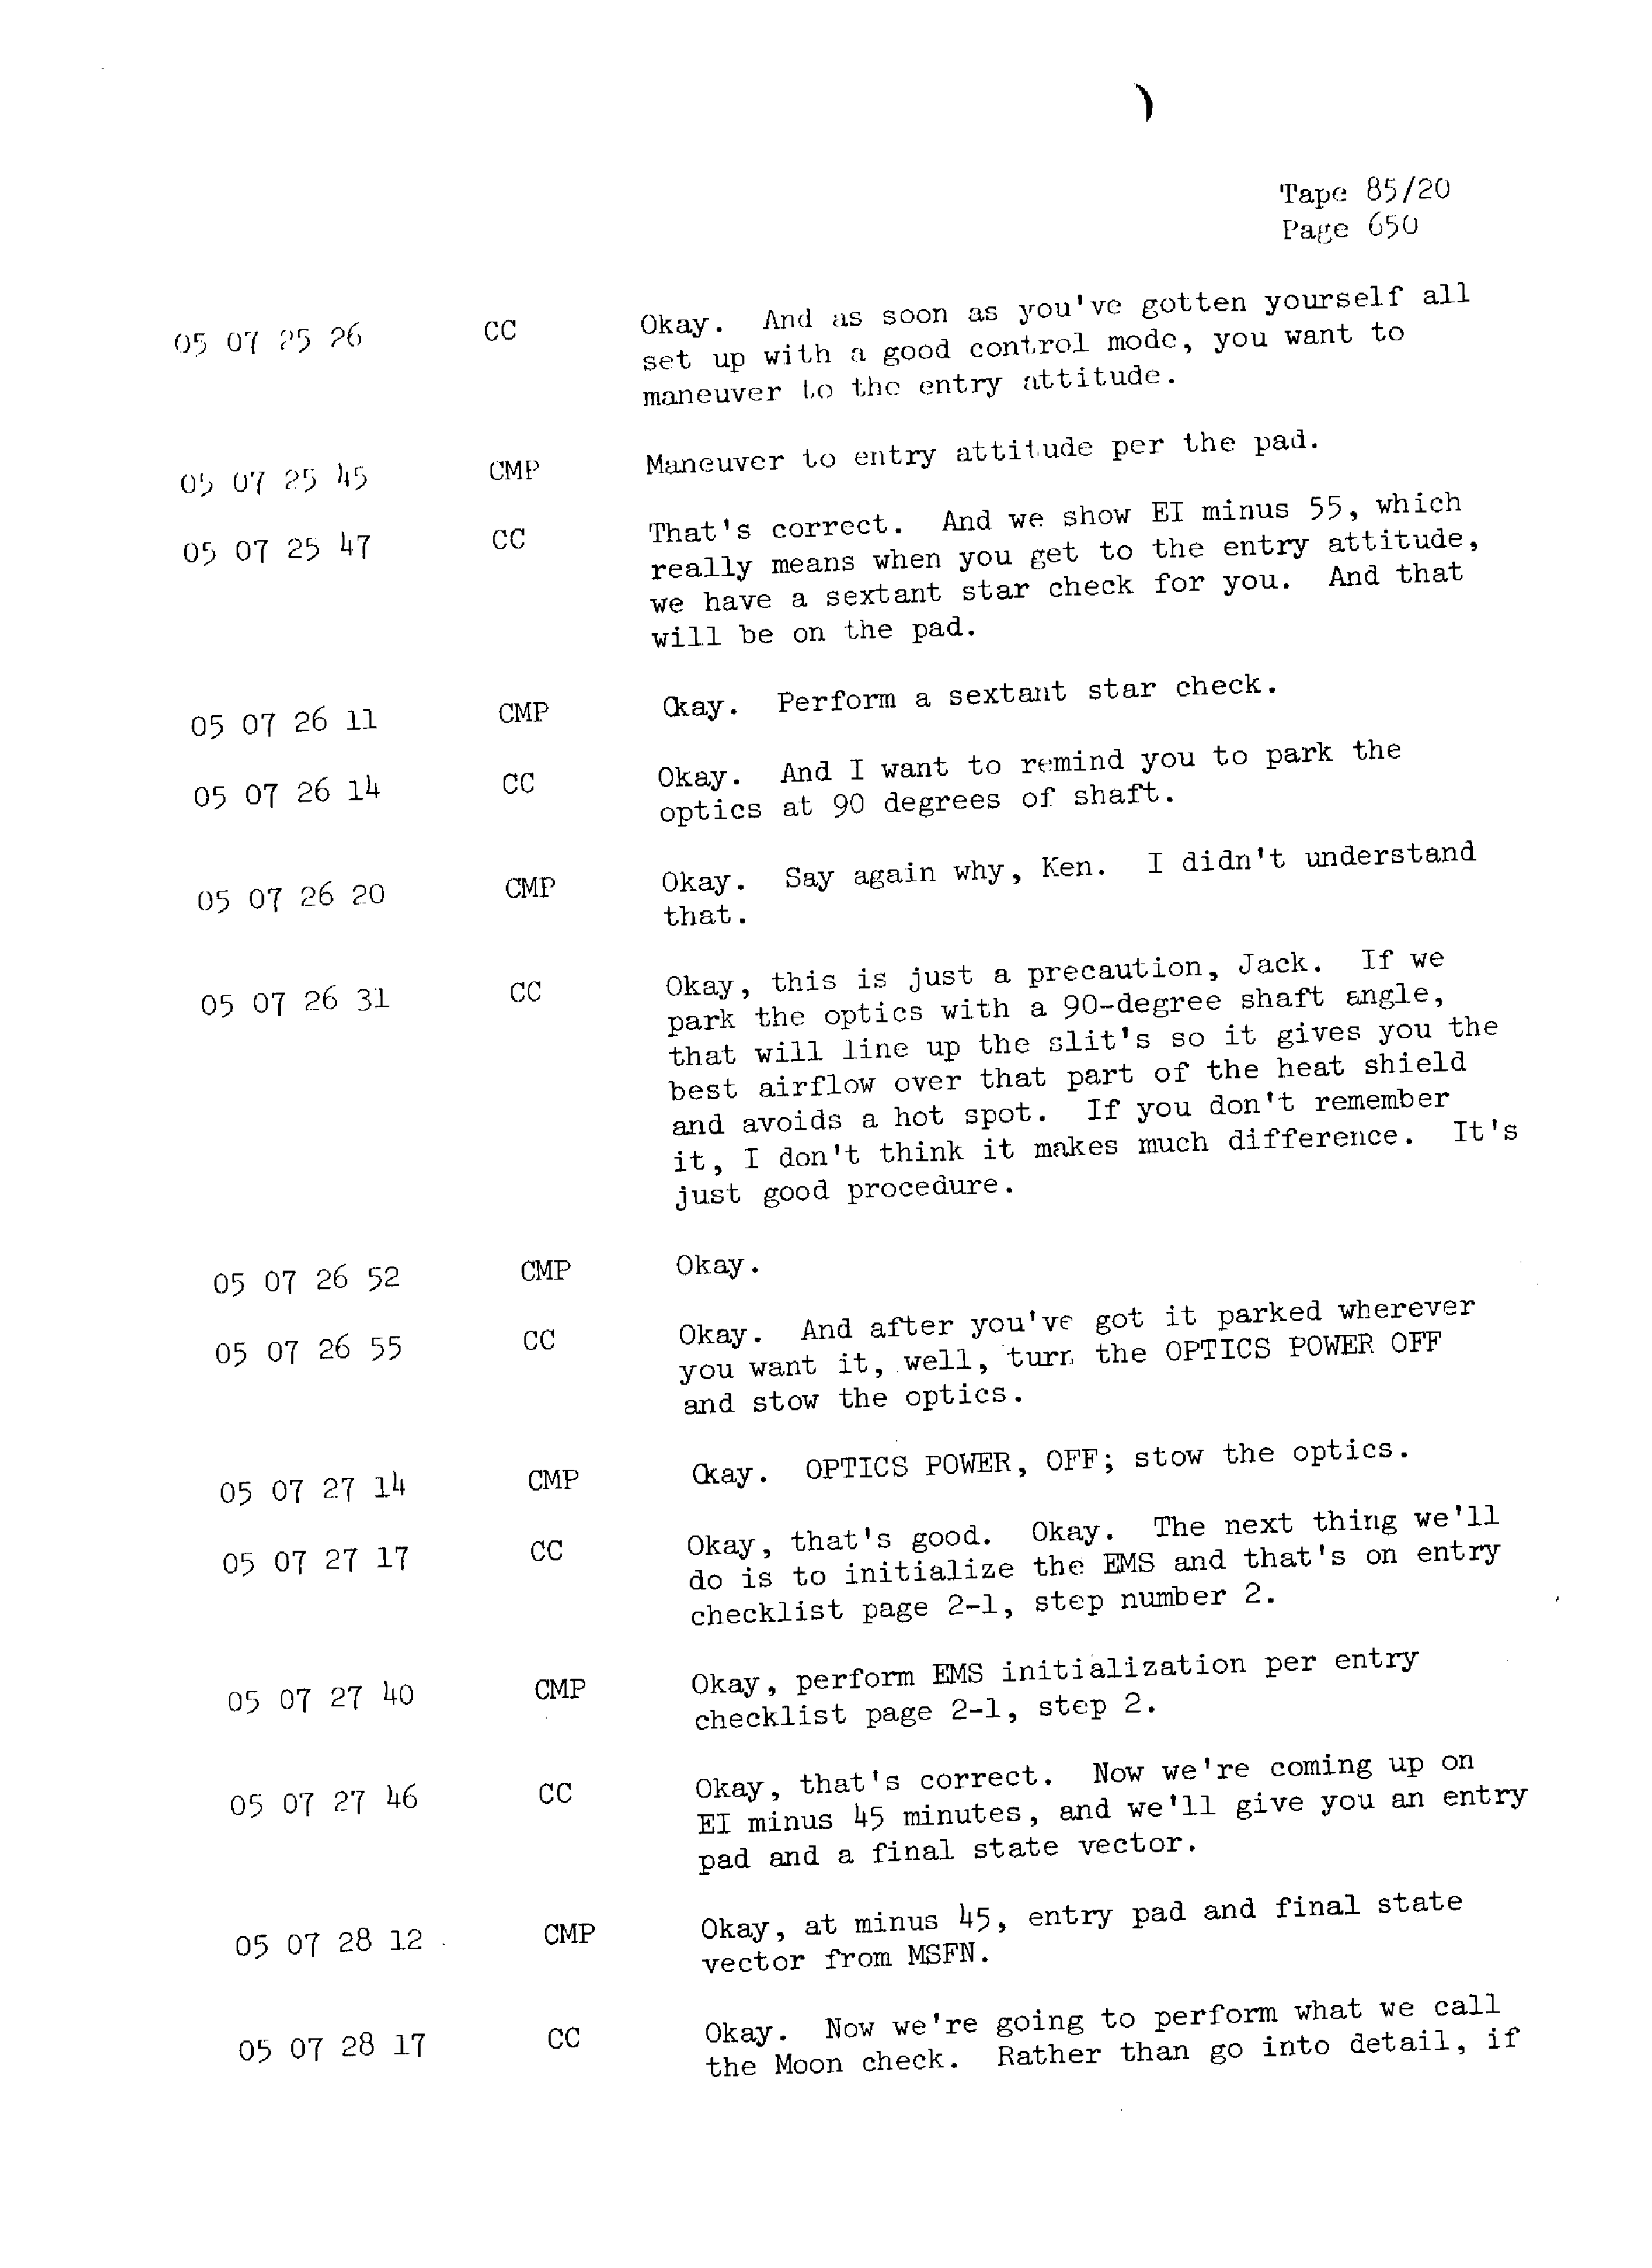 Page 657 of Apollo 13’s original transcript